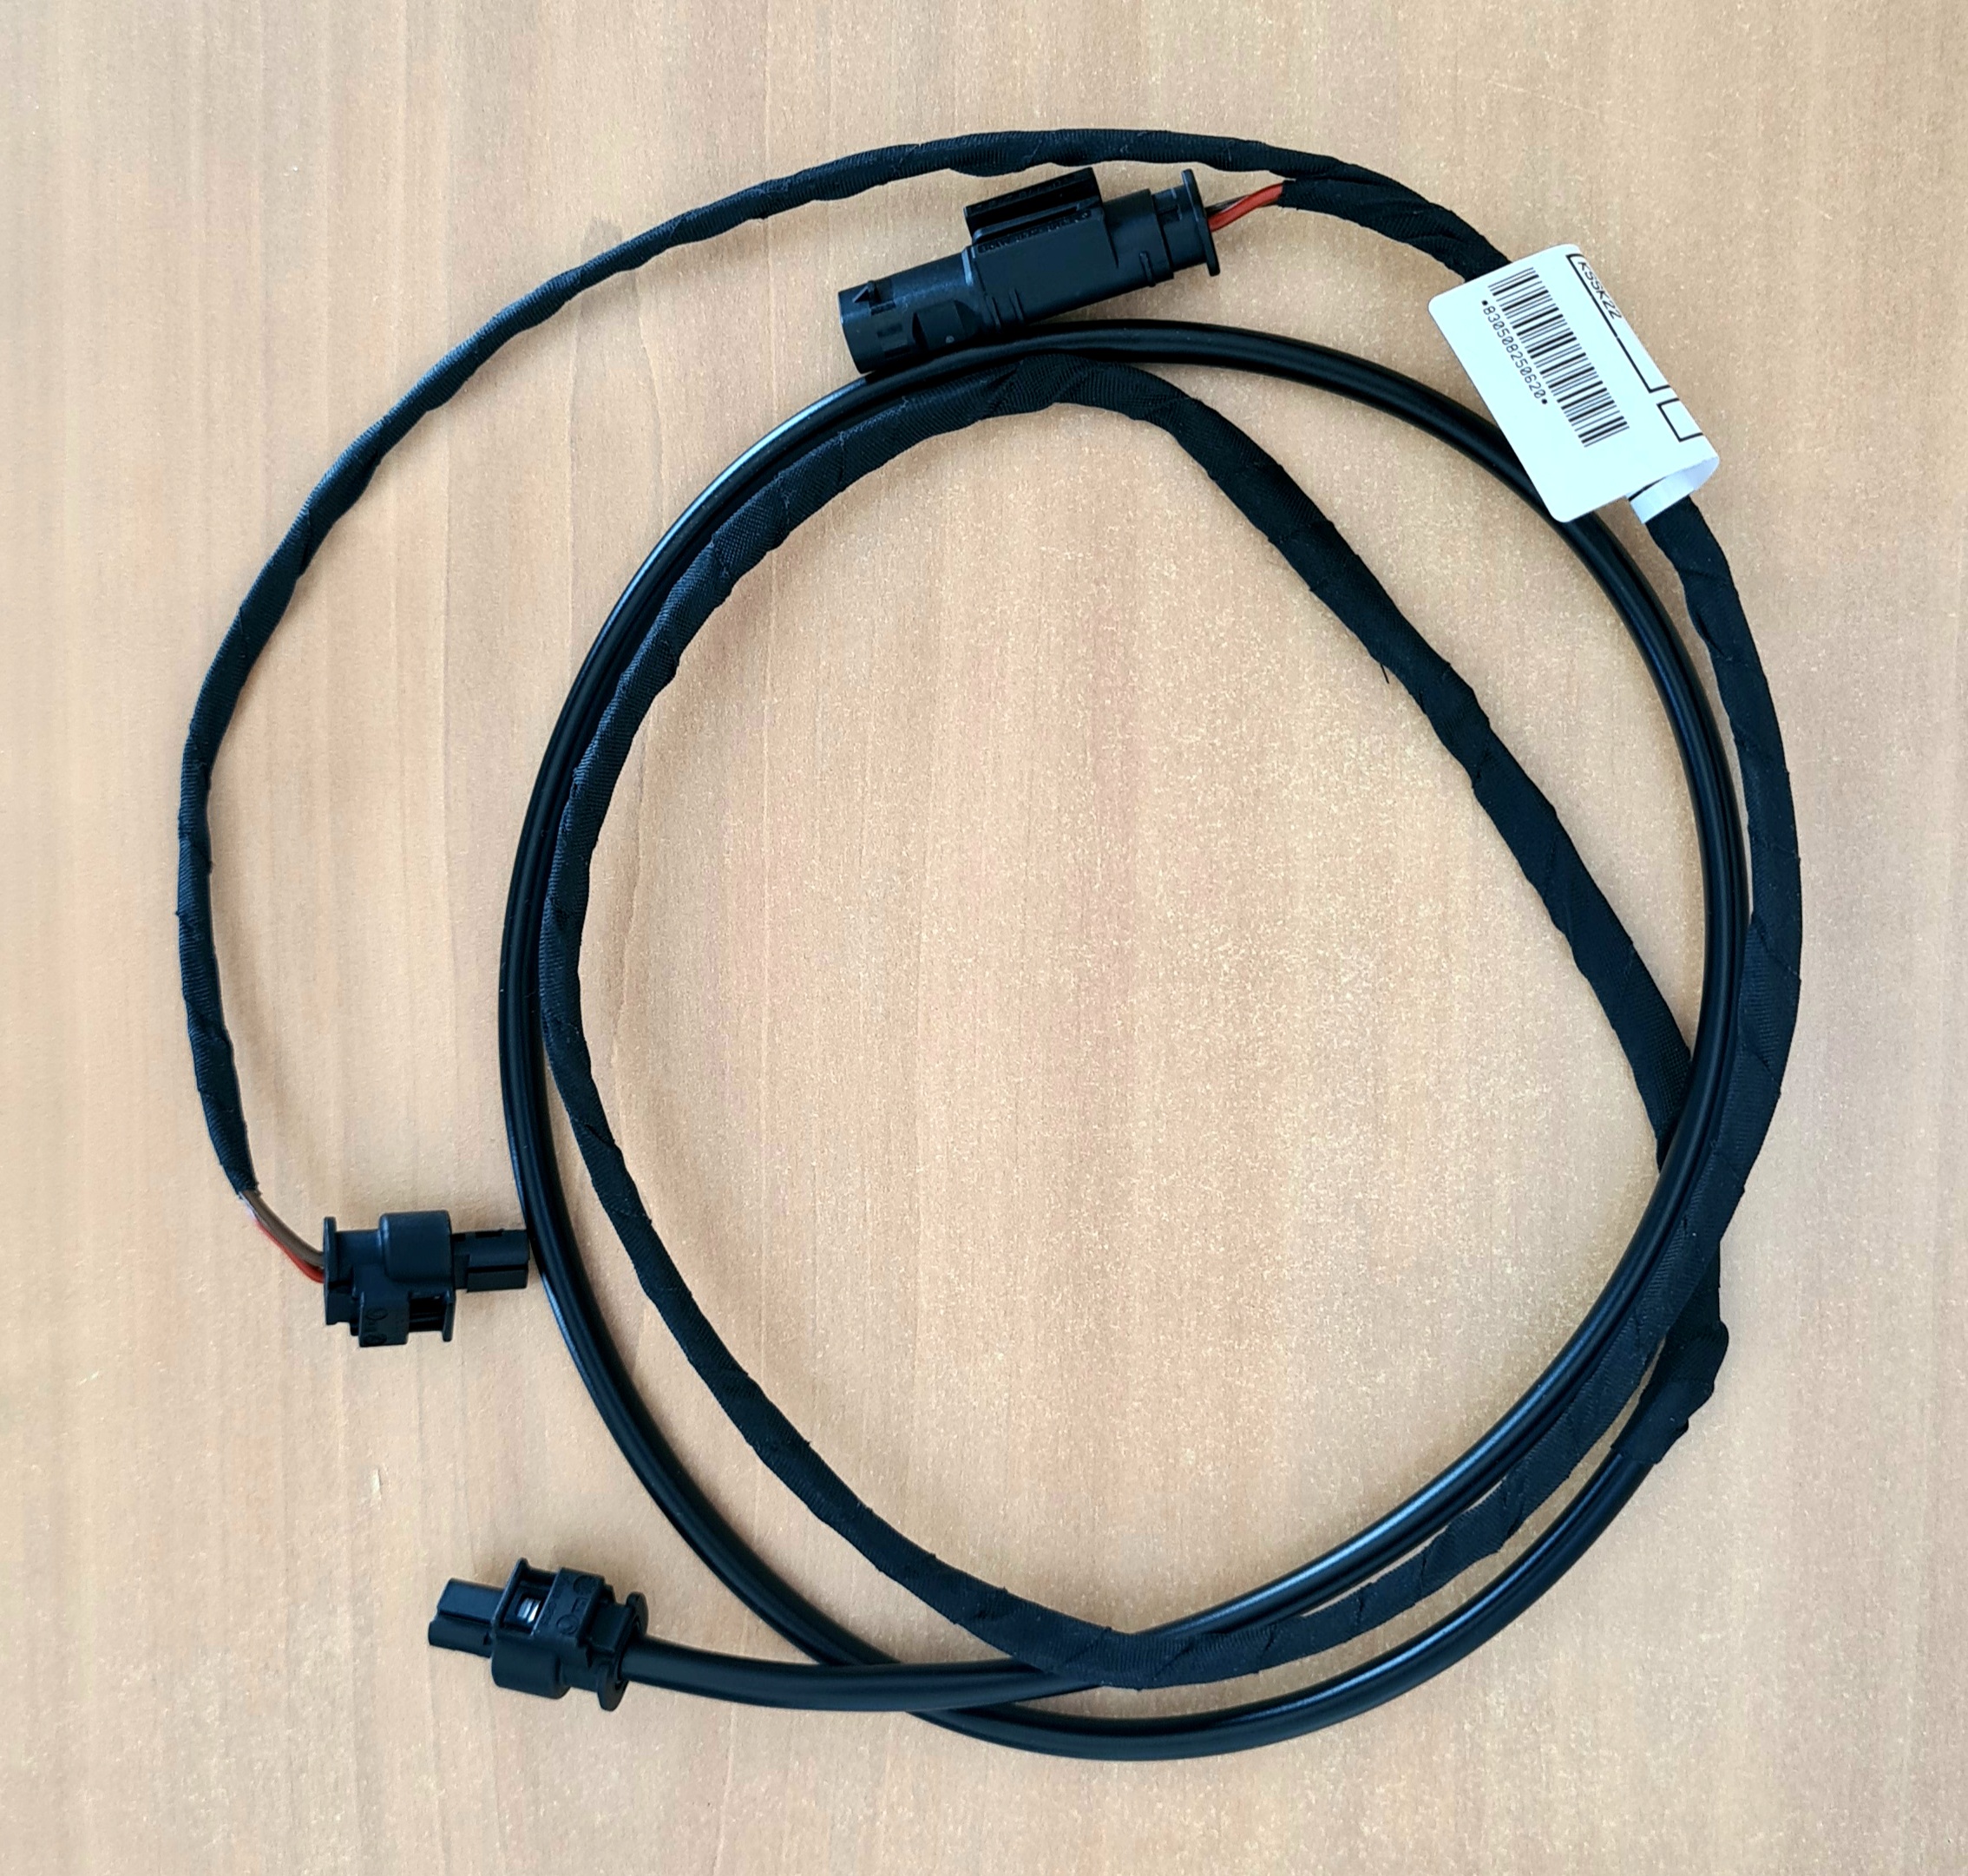 Erledigt - BMW Y-Kabel (Anschlusskabel ) für 2. Steckdose oder andere  Verbraucher